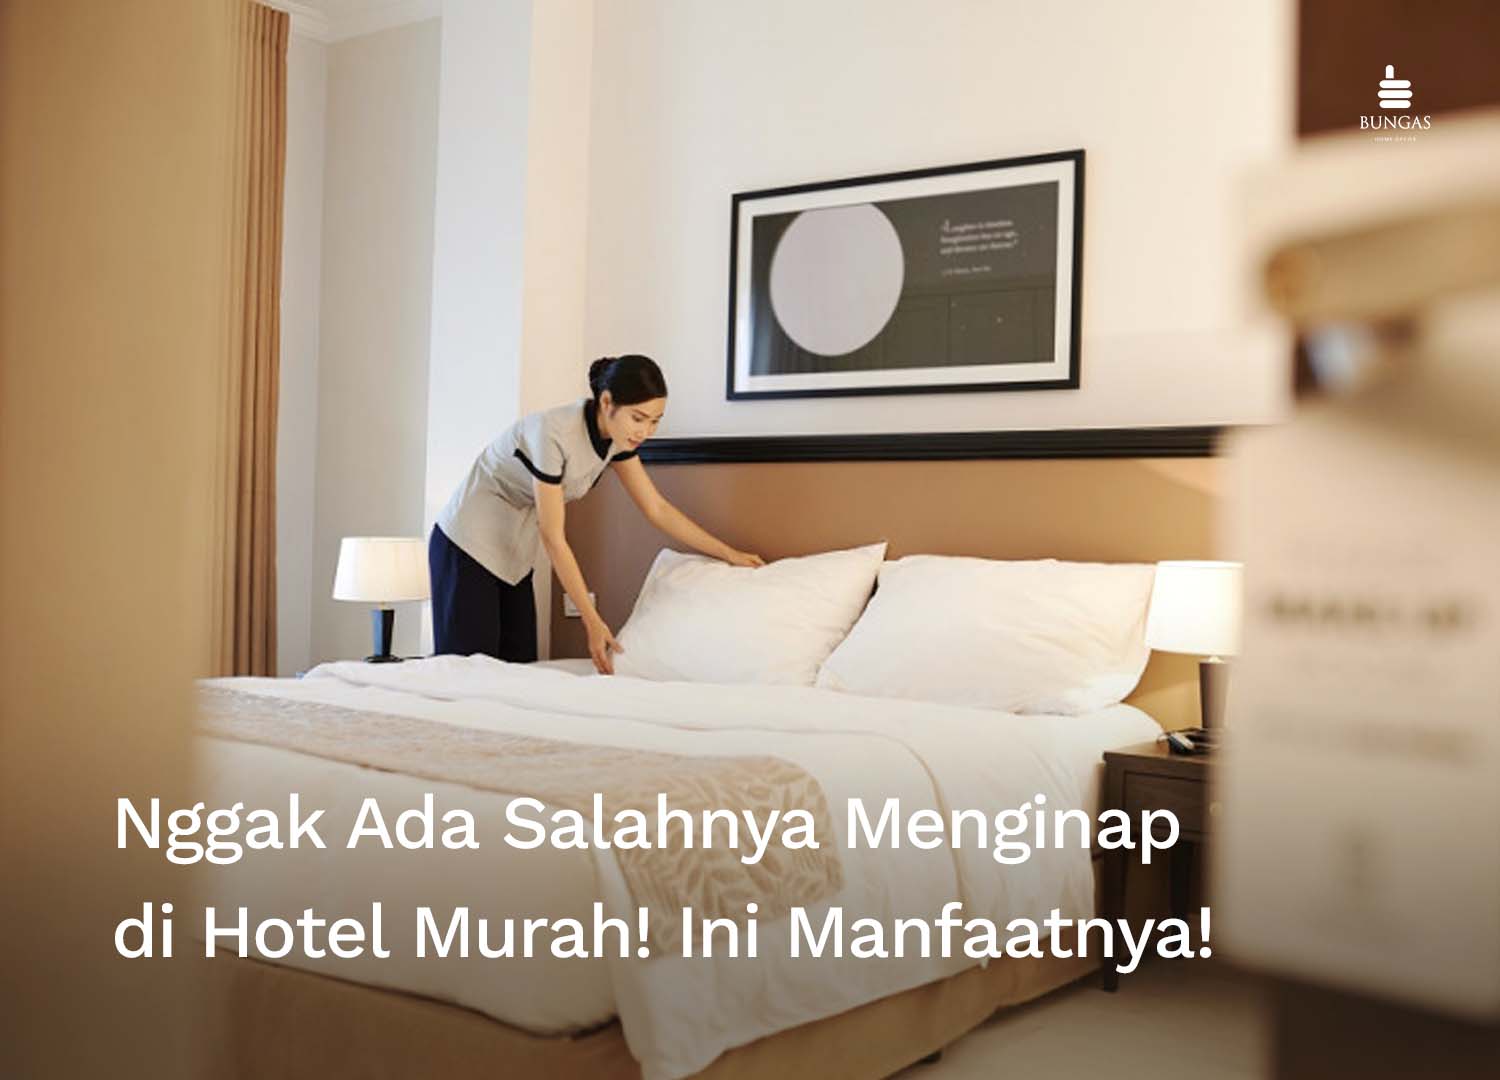 You are currently viewing Nggak Ada Salahnya Menginap di Hotel Murah! Ini Manfaatnya!